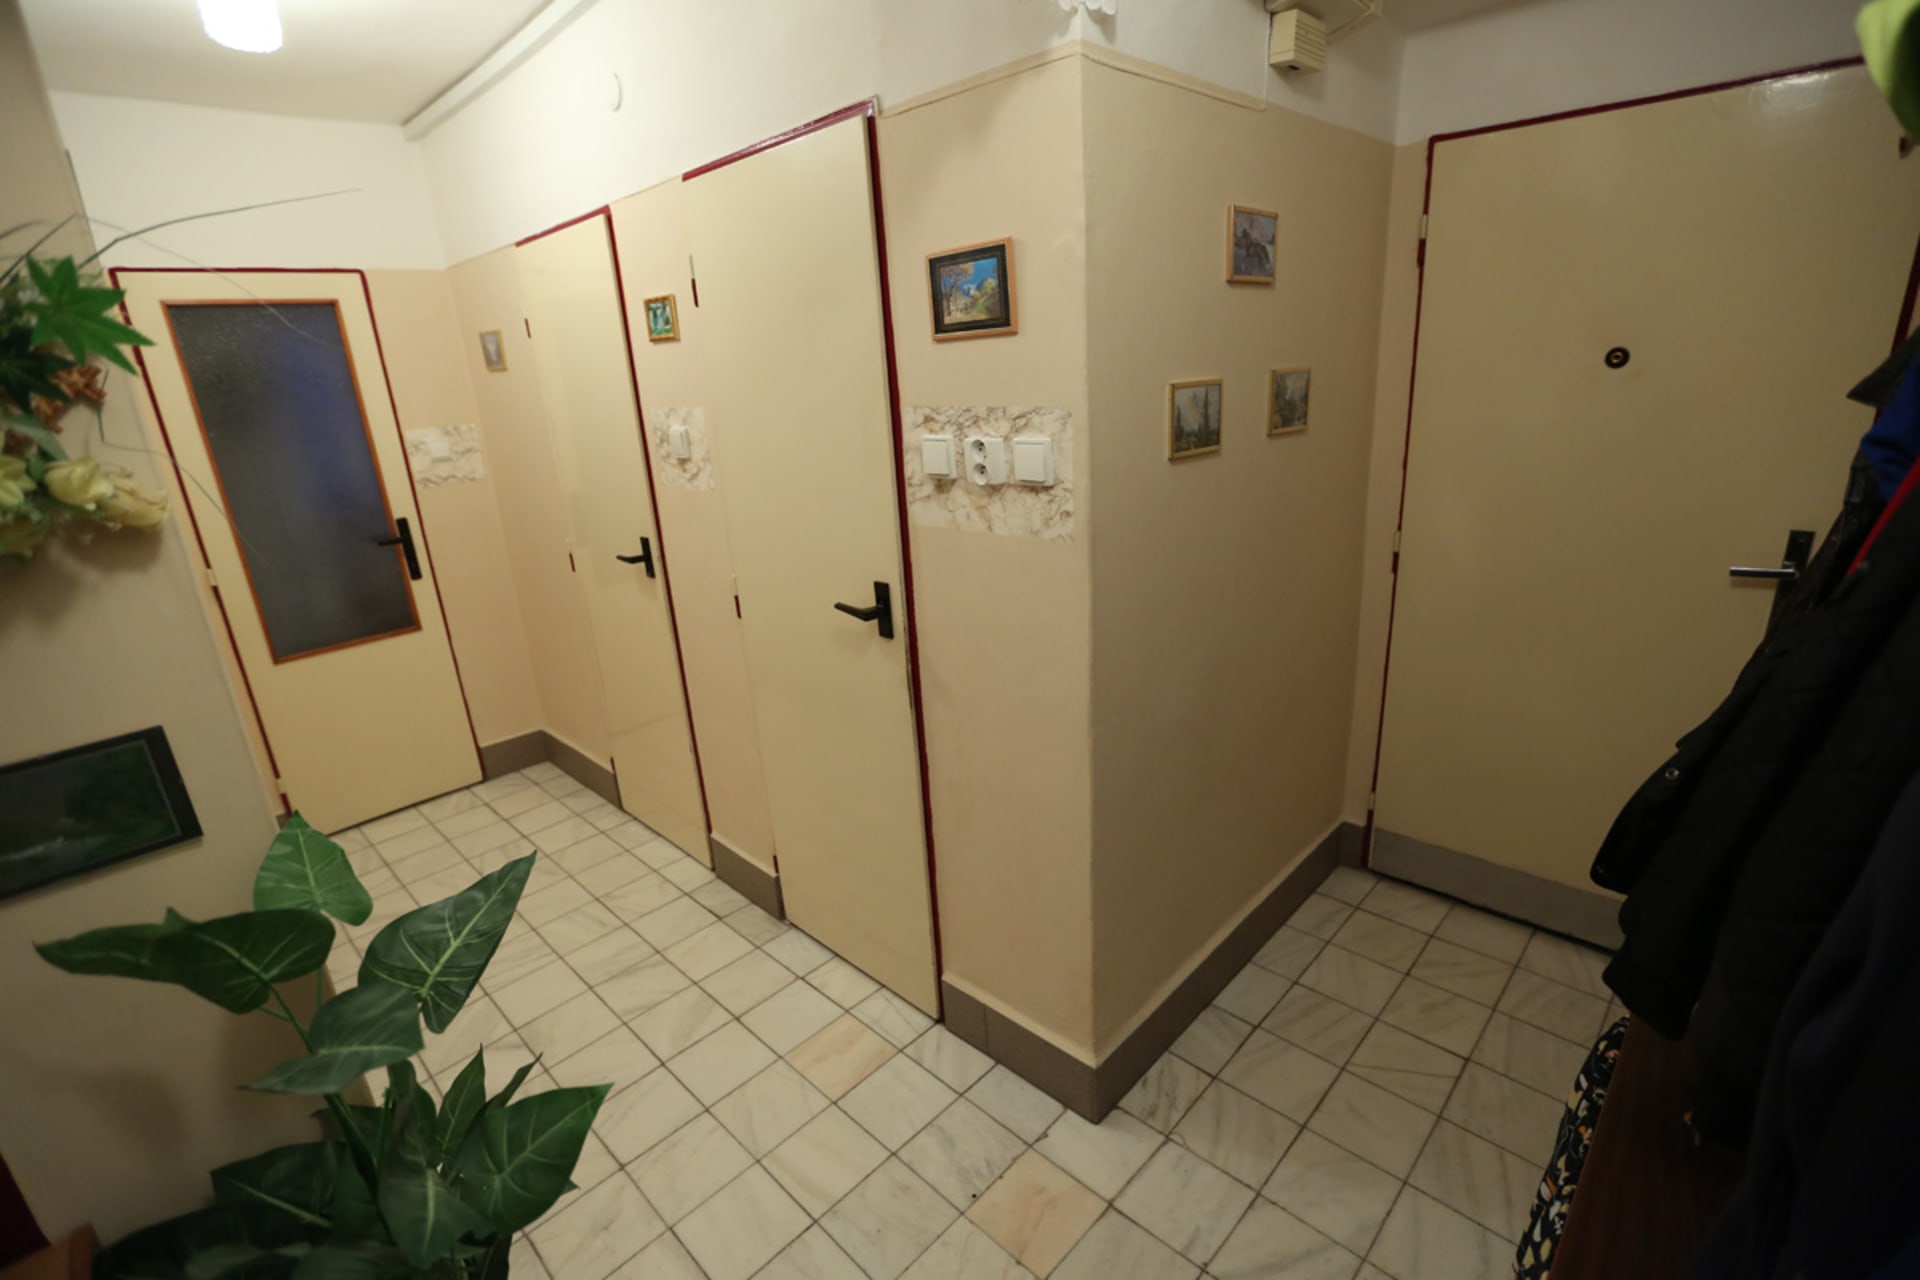 Napravo vstupní dveře, potom toaleta s koupelnou a úzké prosklené dveře vedoucí do kuchyně